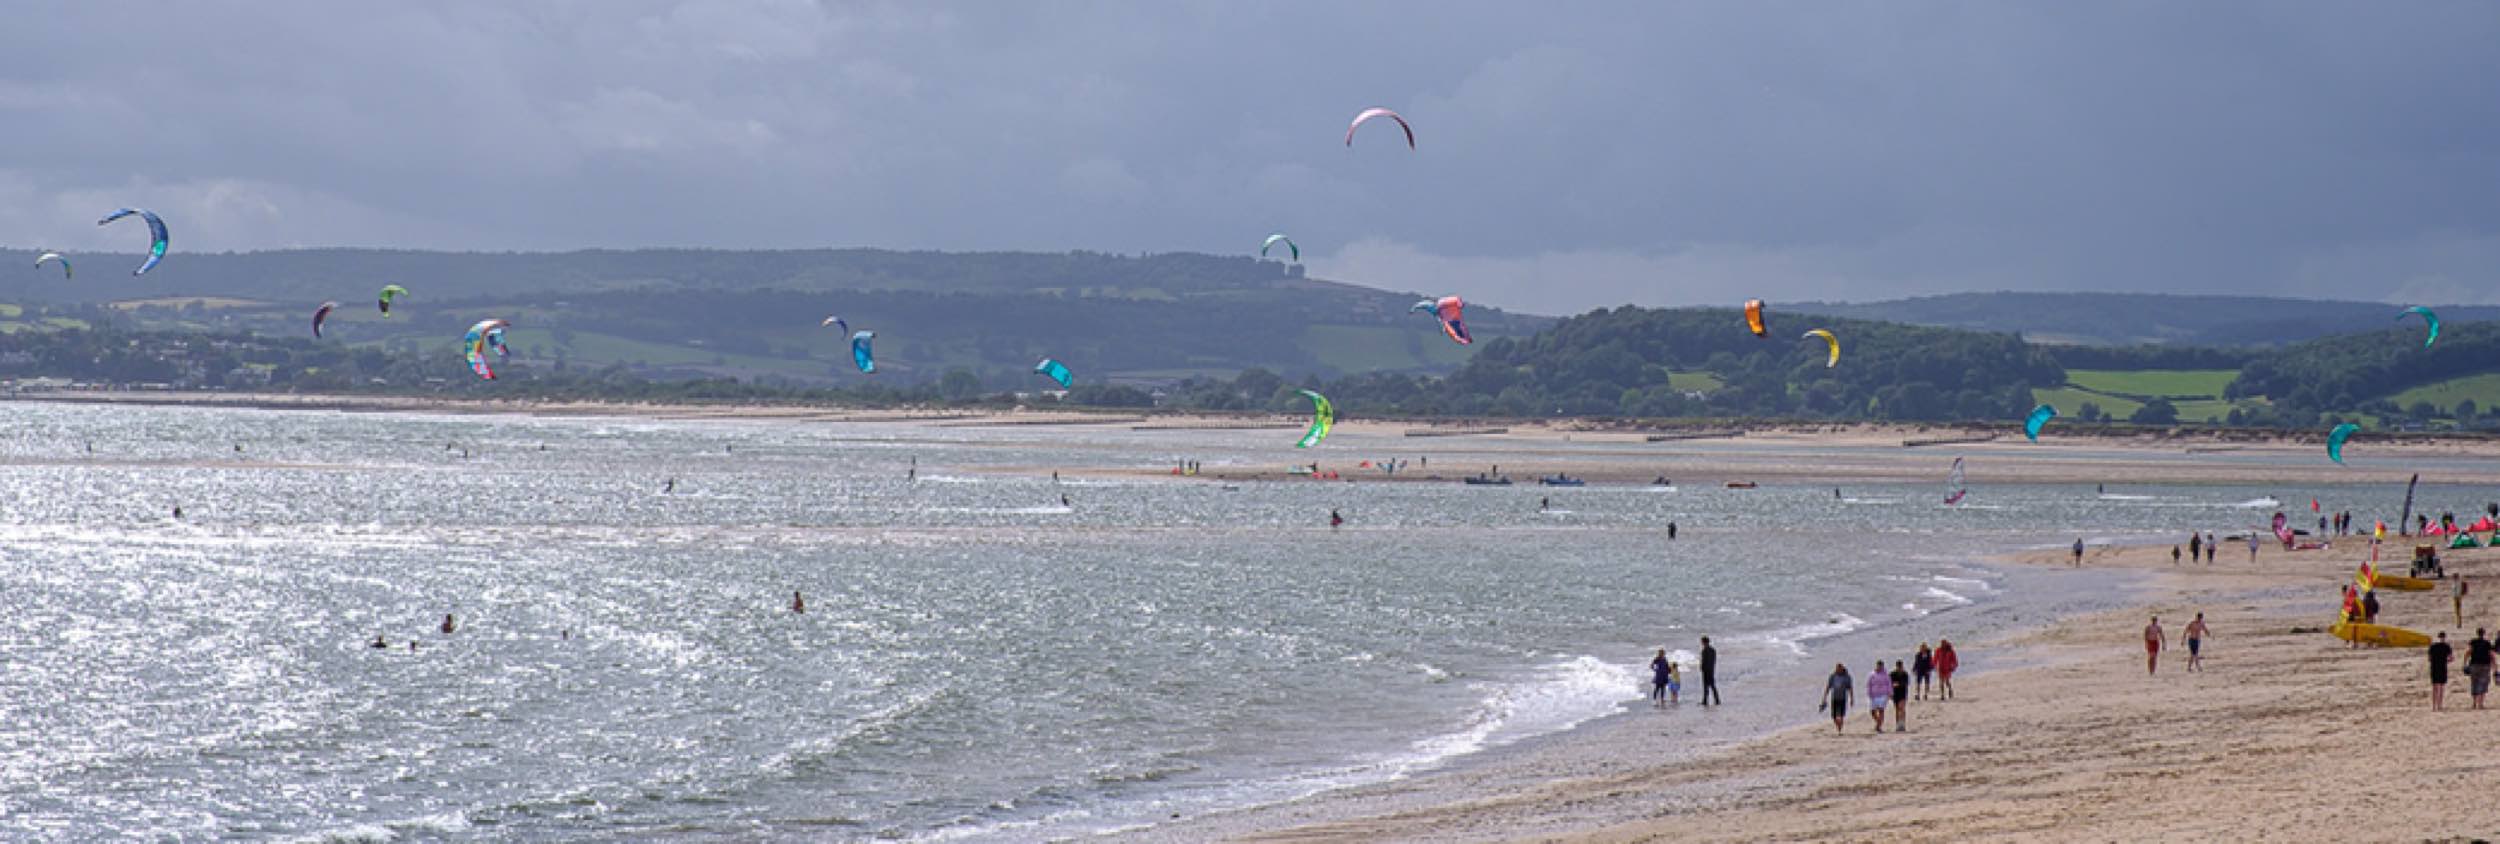 Kitesurfing in Exmouth, UK